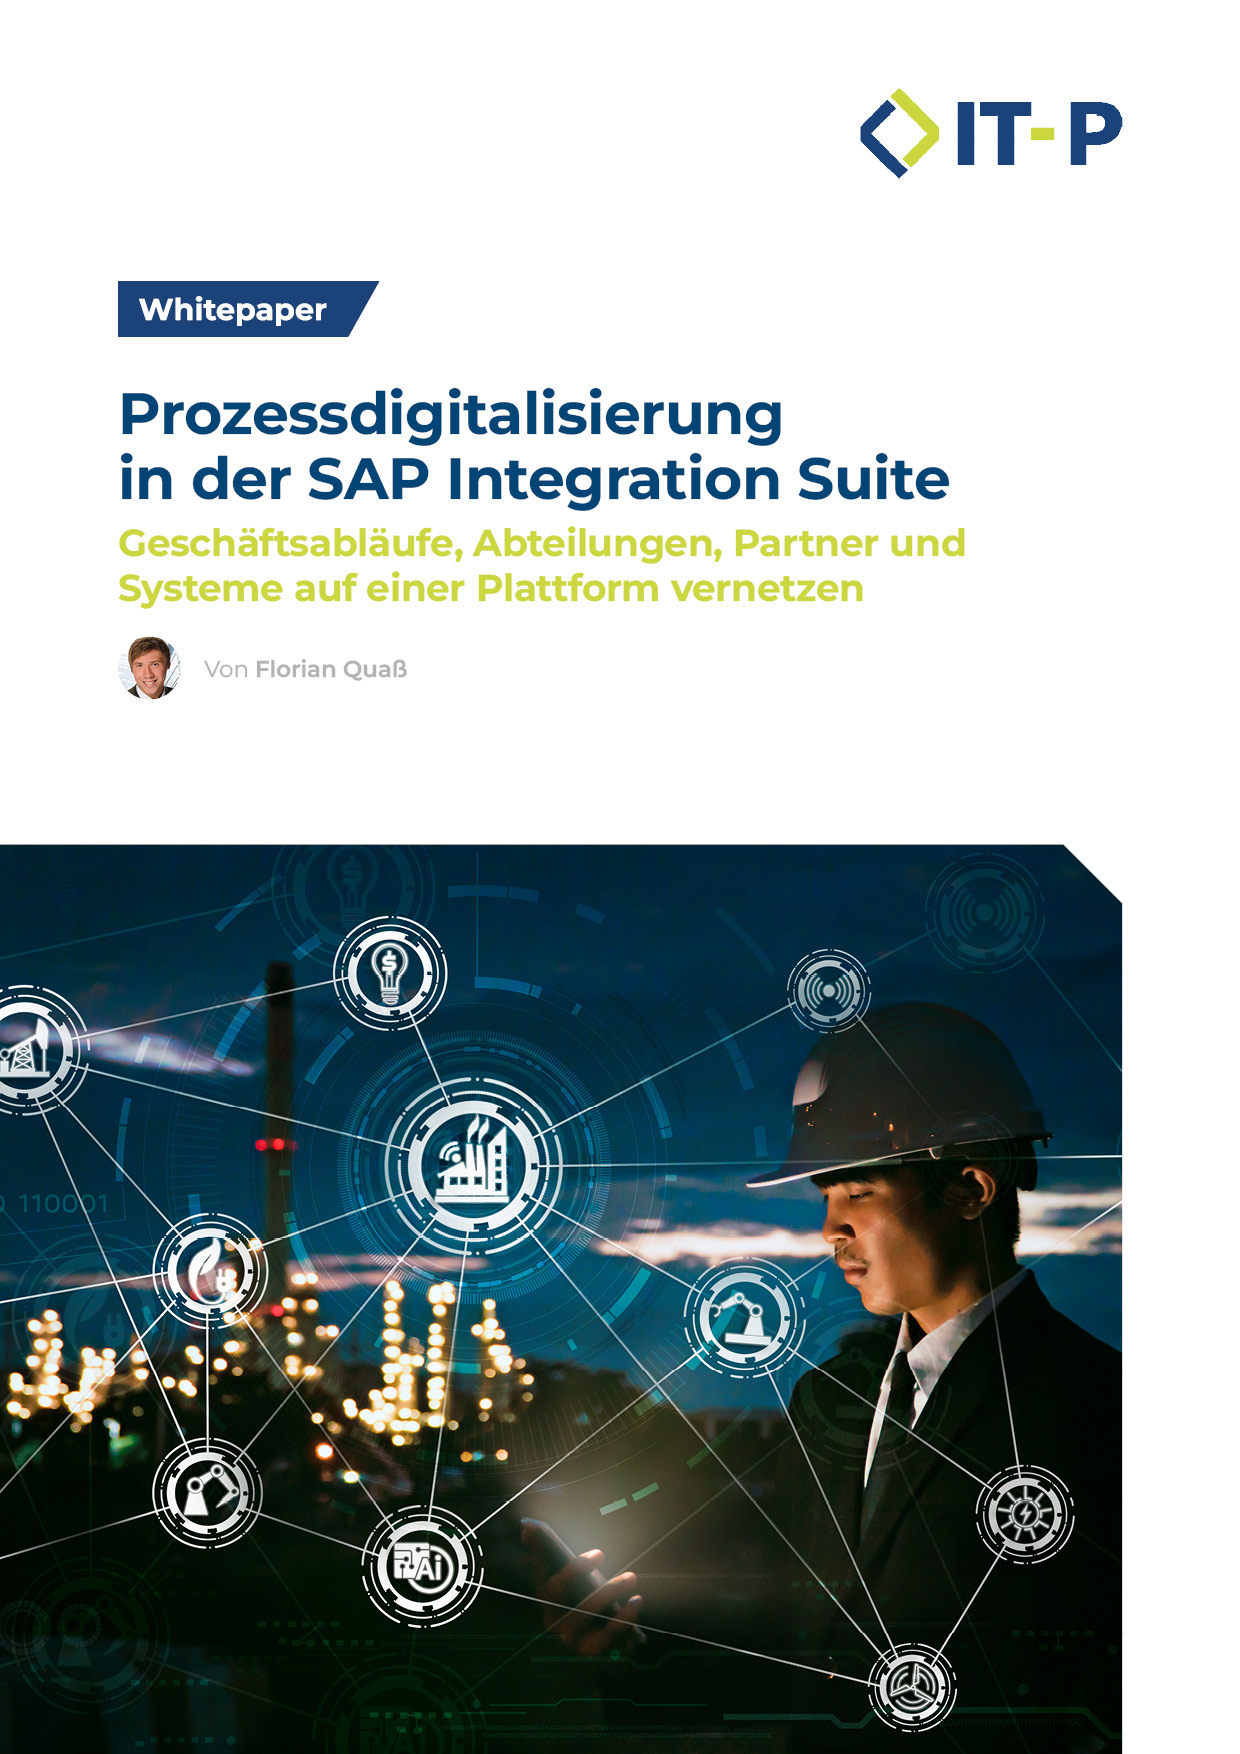 Whitepaper - Prozessdigitalisierung in der SAP Integration Suite